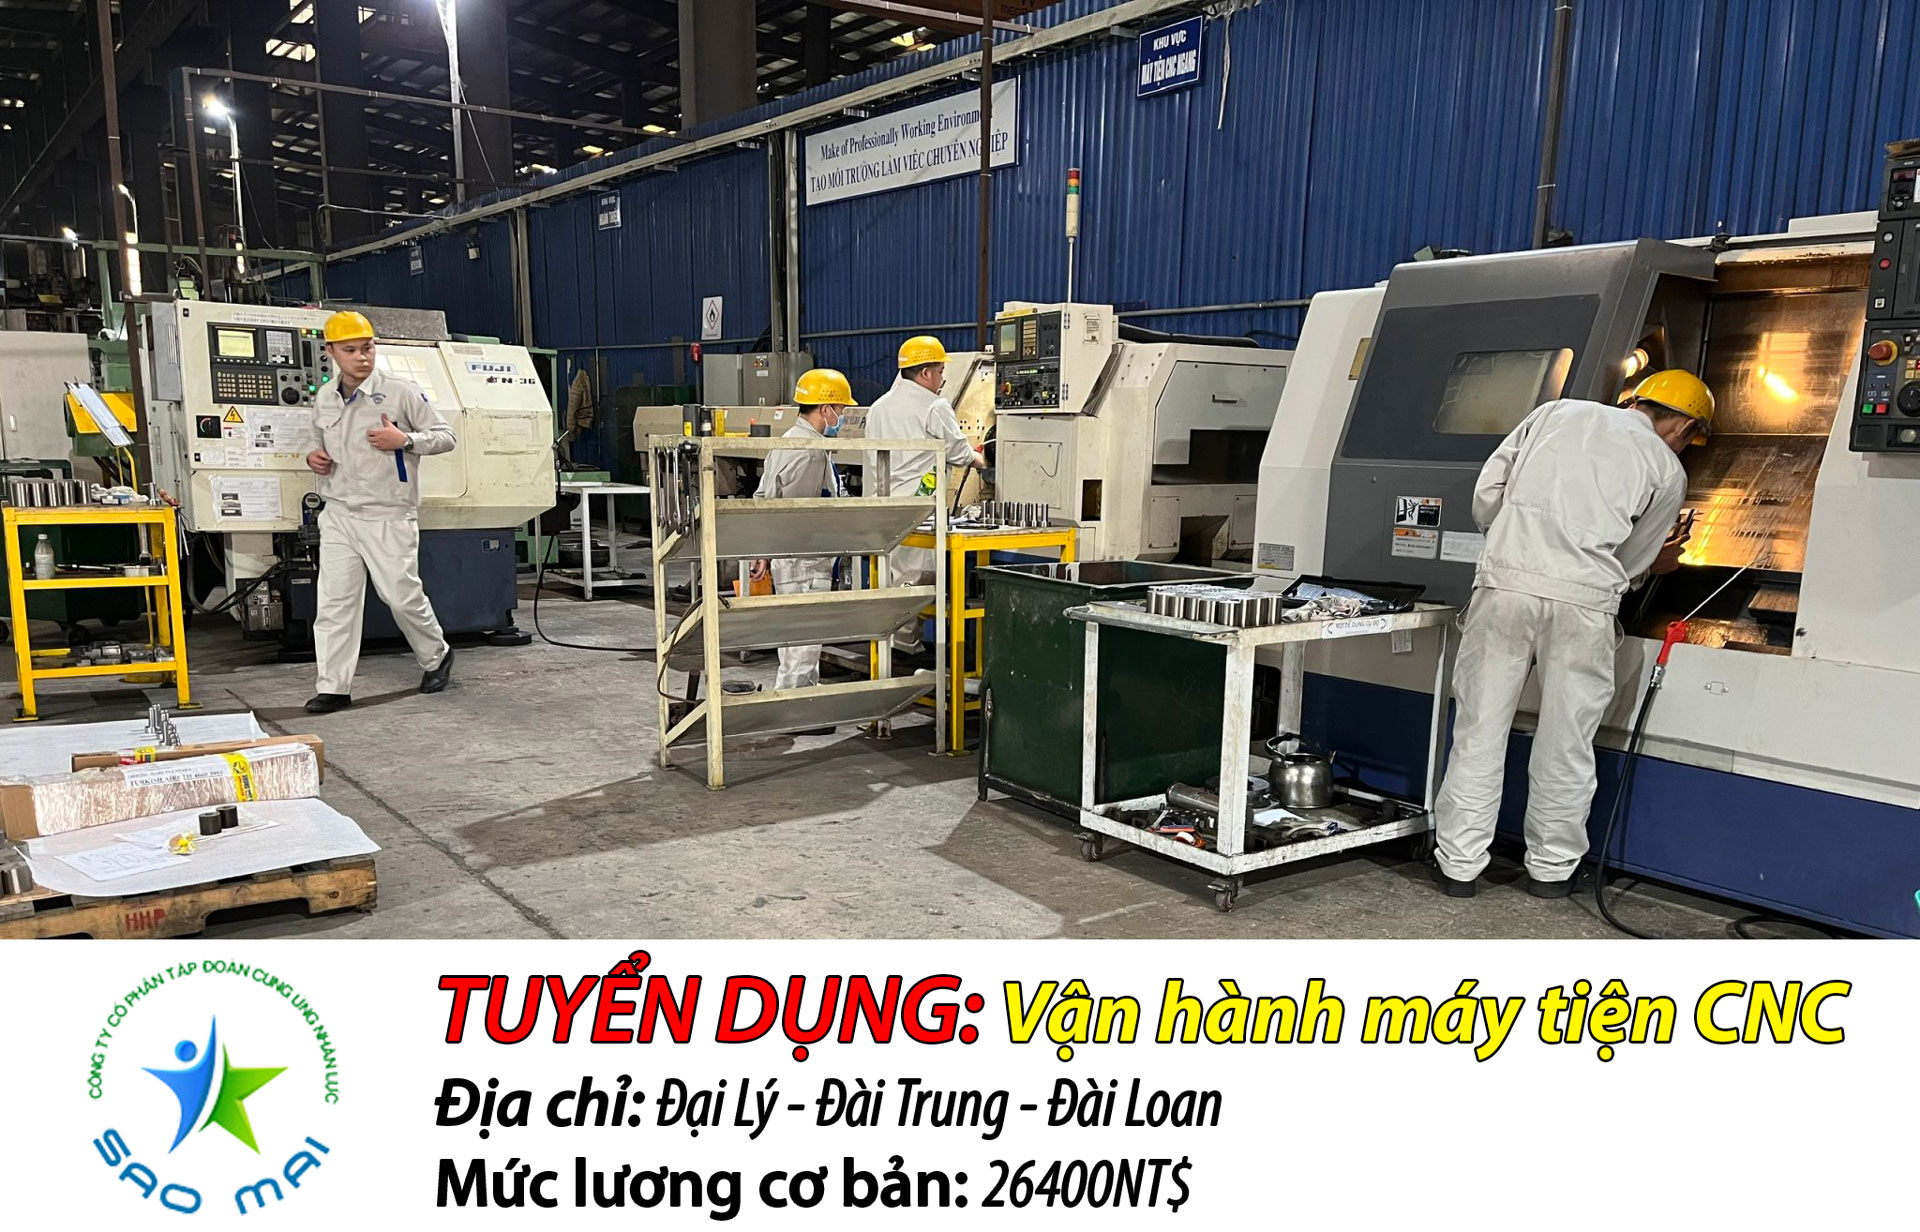 Đơn hàng CƠ KHÍ chuyên thao tác máy TIỆN CNC tại Đài Trung - Đài Loan với chi phí thấp và thời gian bay nhanh